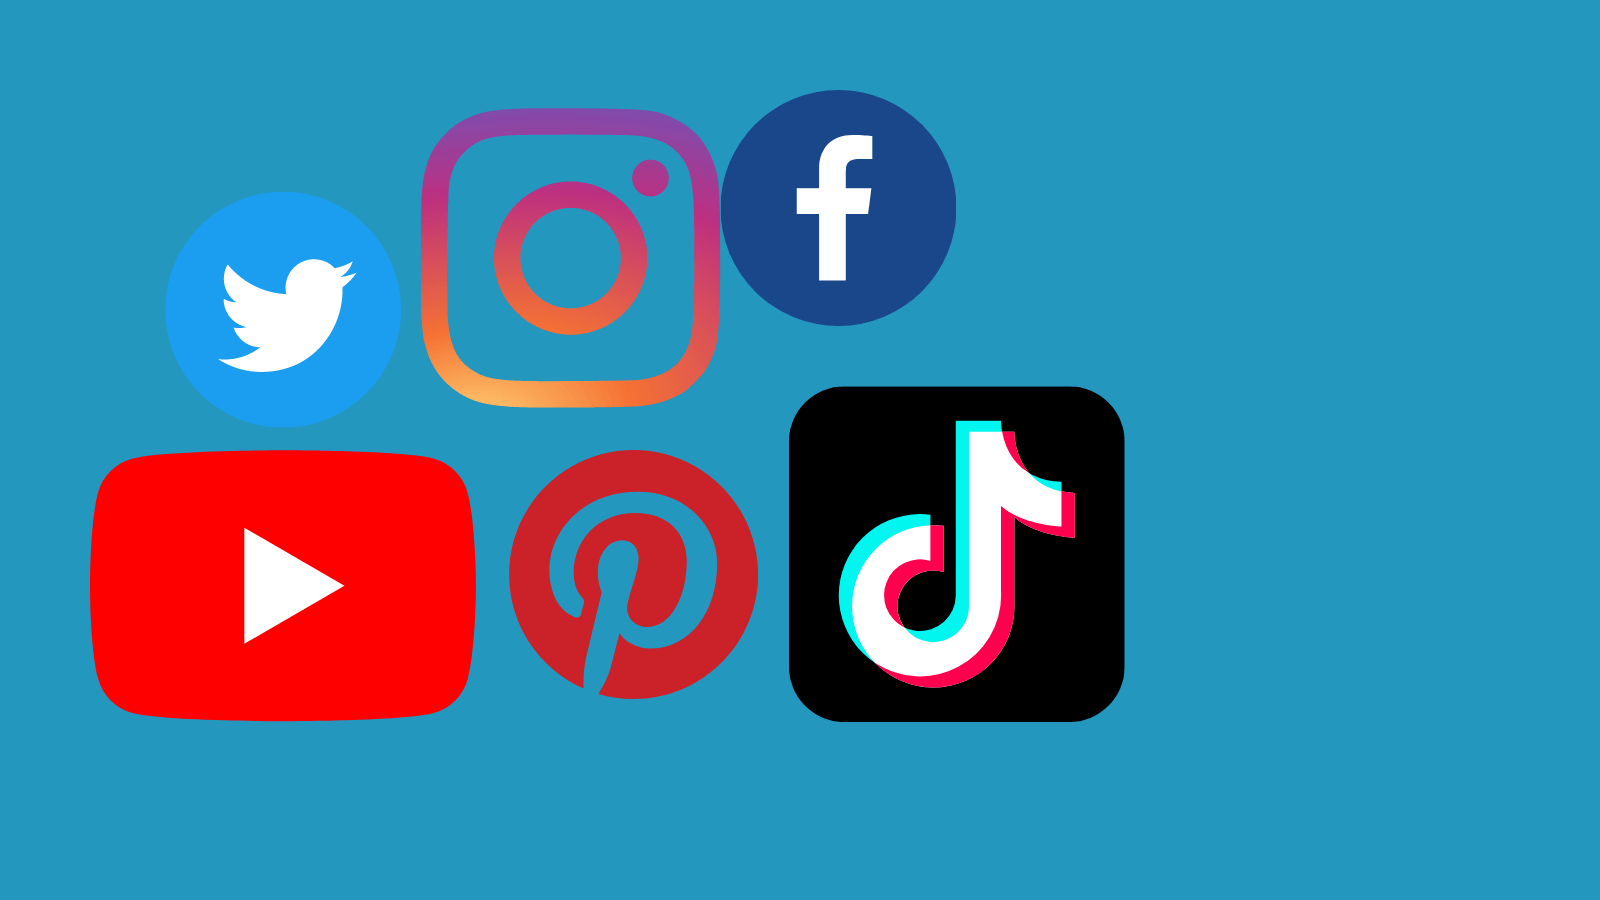 Logos for Twitter, Facebook, YouTube, Instagram, TikTok, and Pinterest